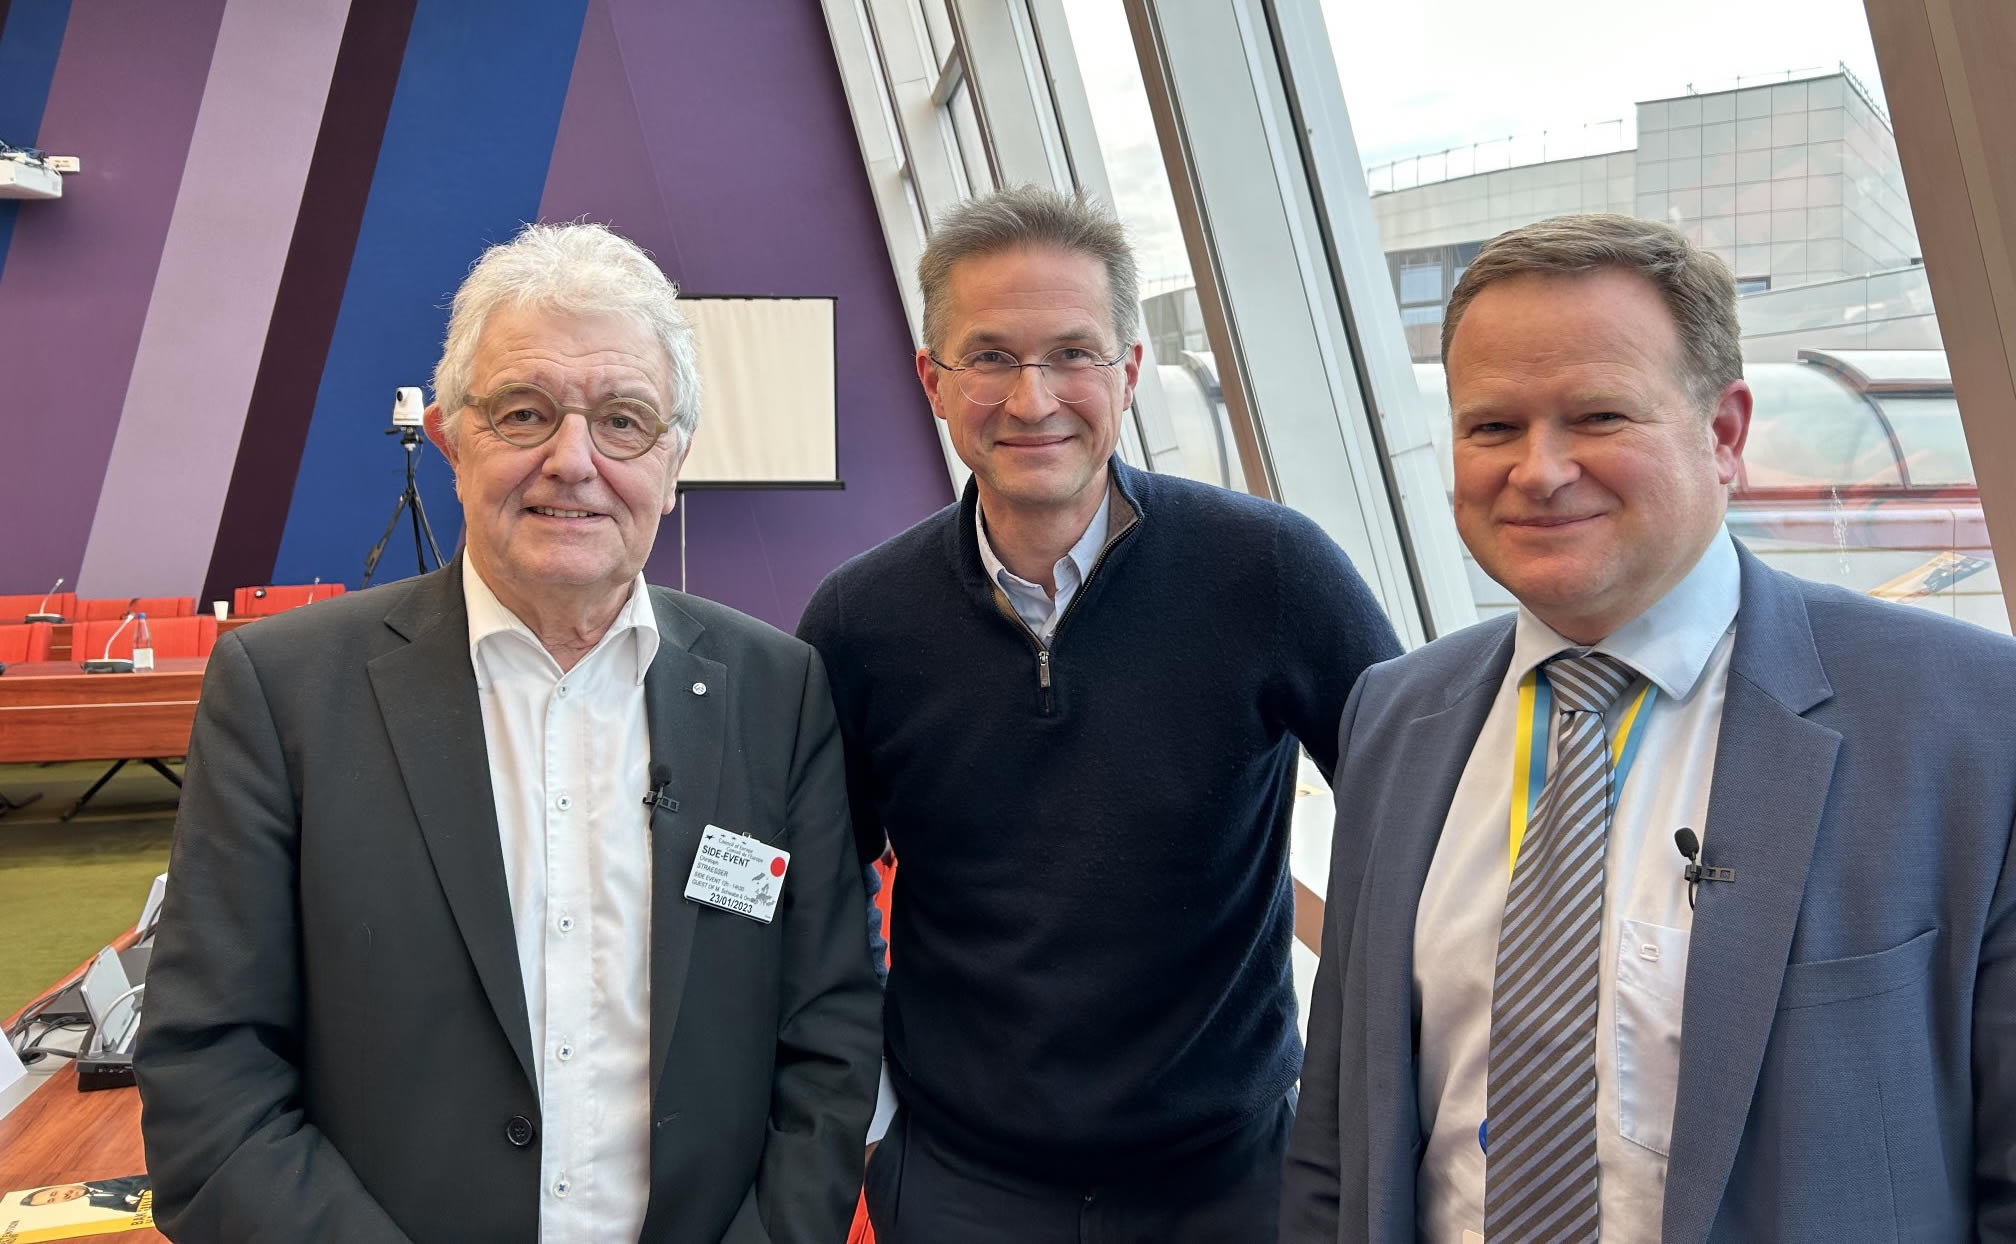 Christoph Strässer, Gerald Knaus, Frank Schwabe. Photo: ESI